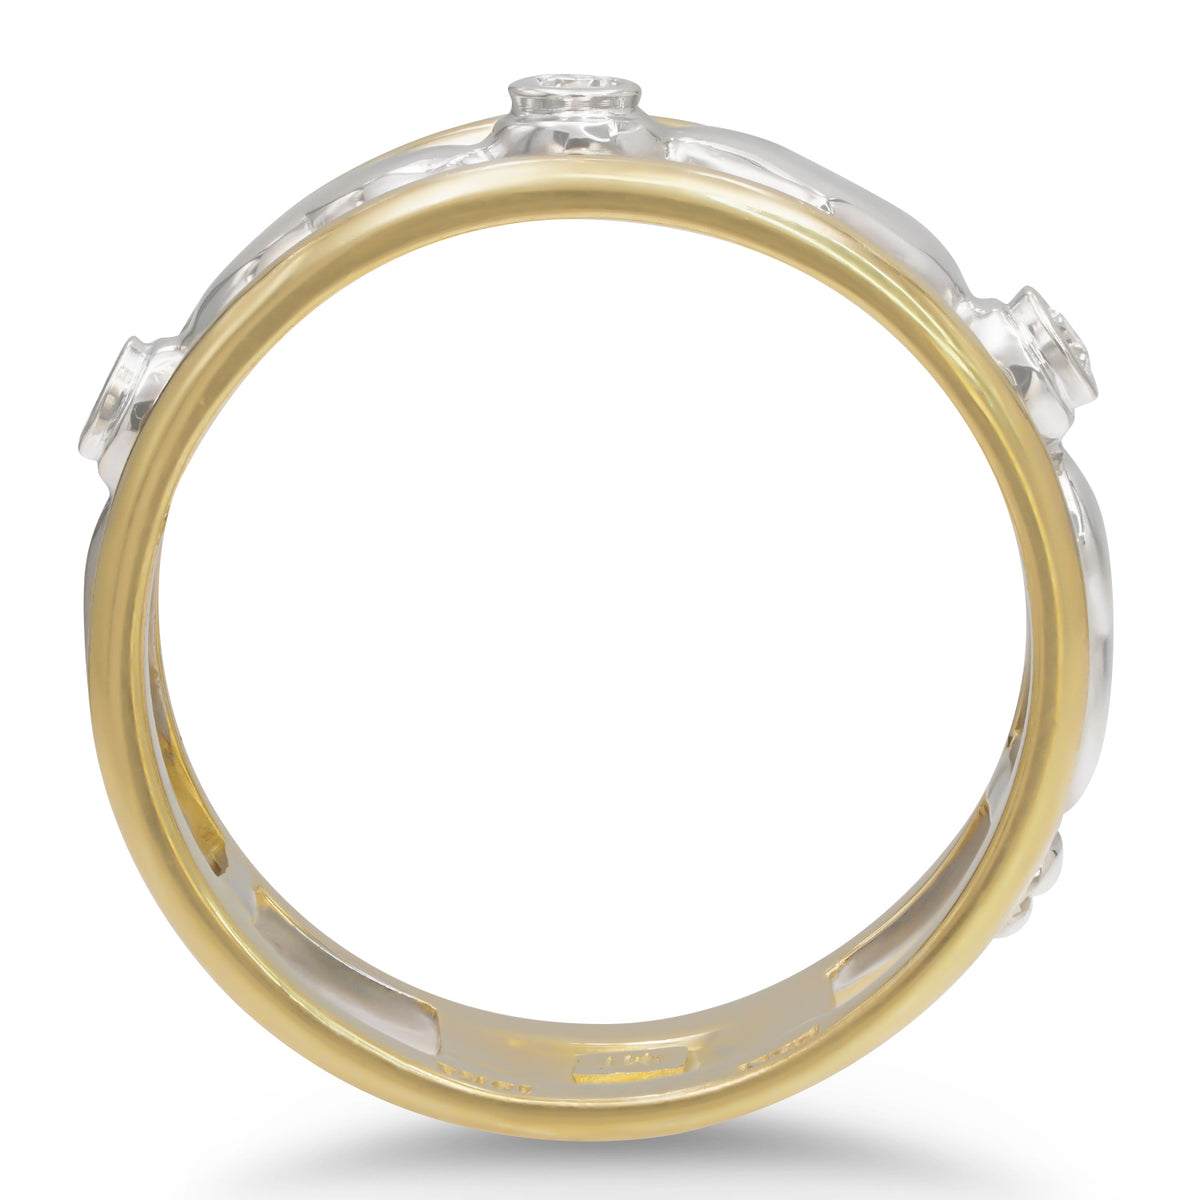 Italian-made Heart Ring